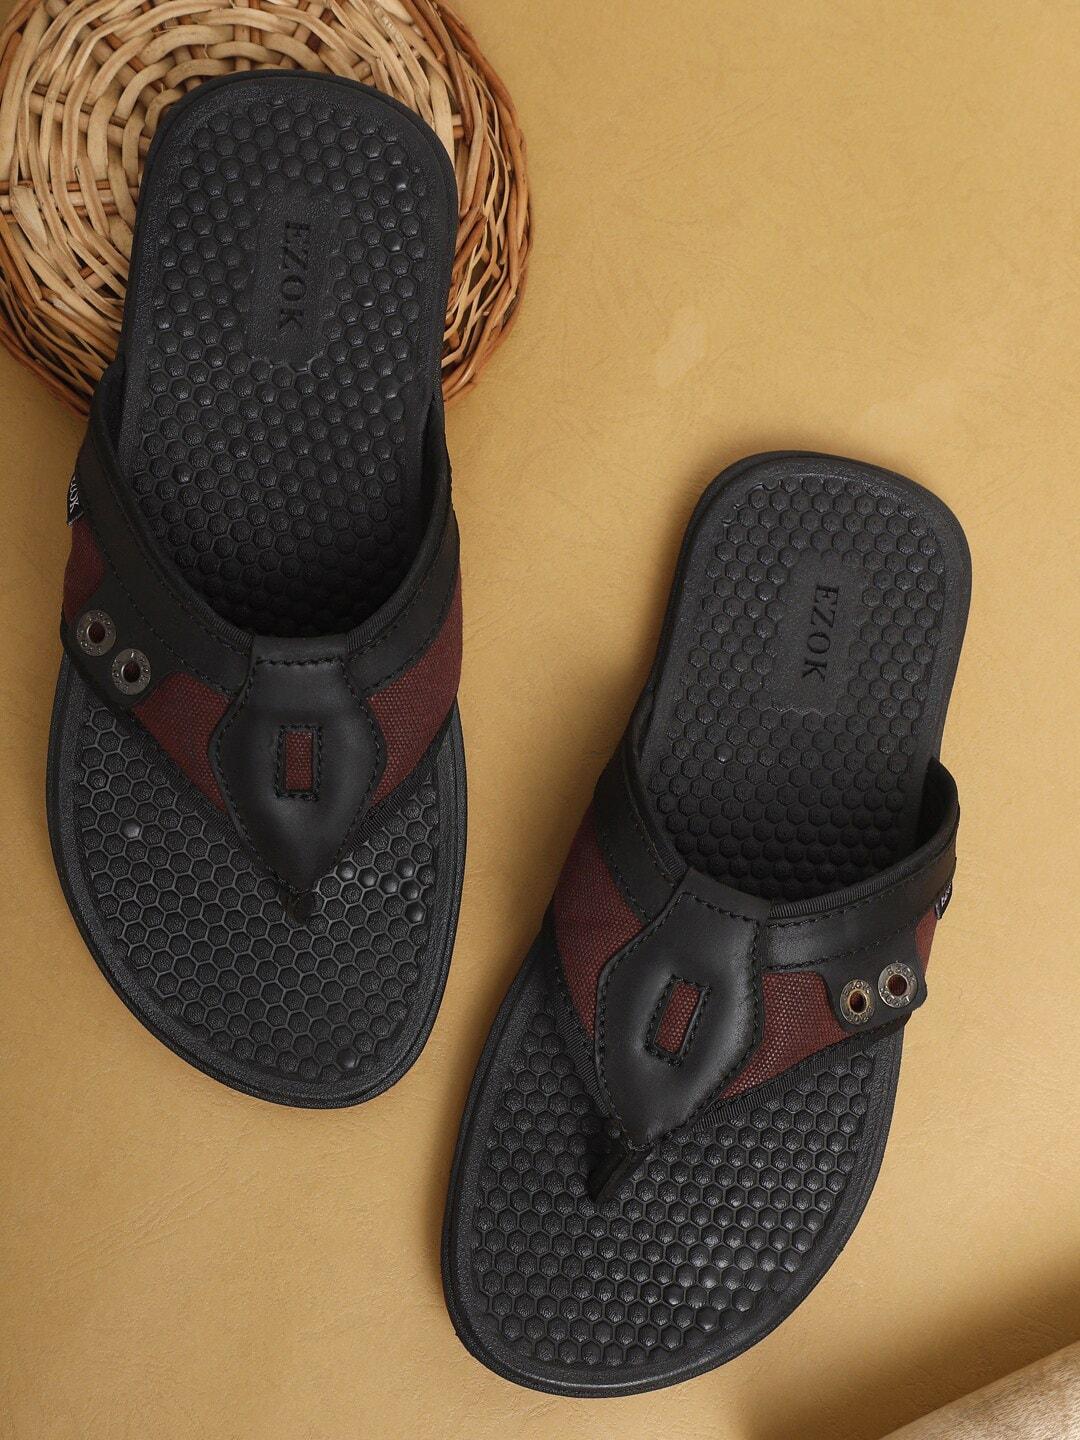 EZOK Men Textured Leather Comfort Sandals